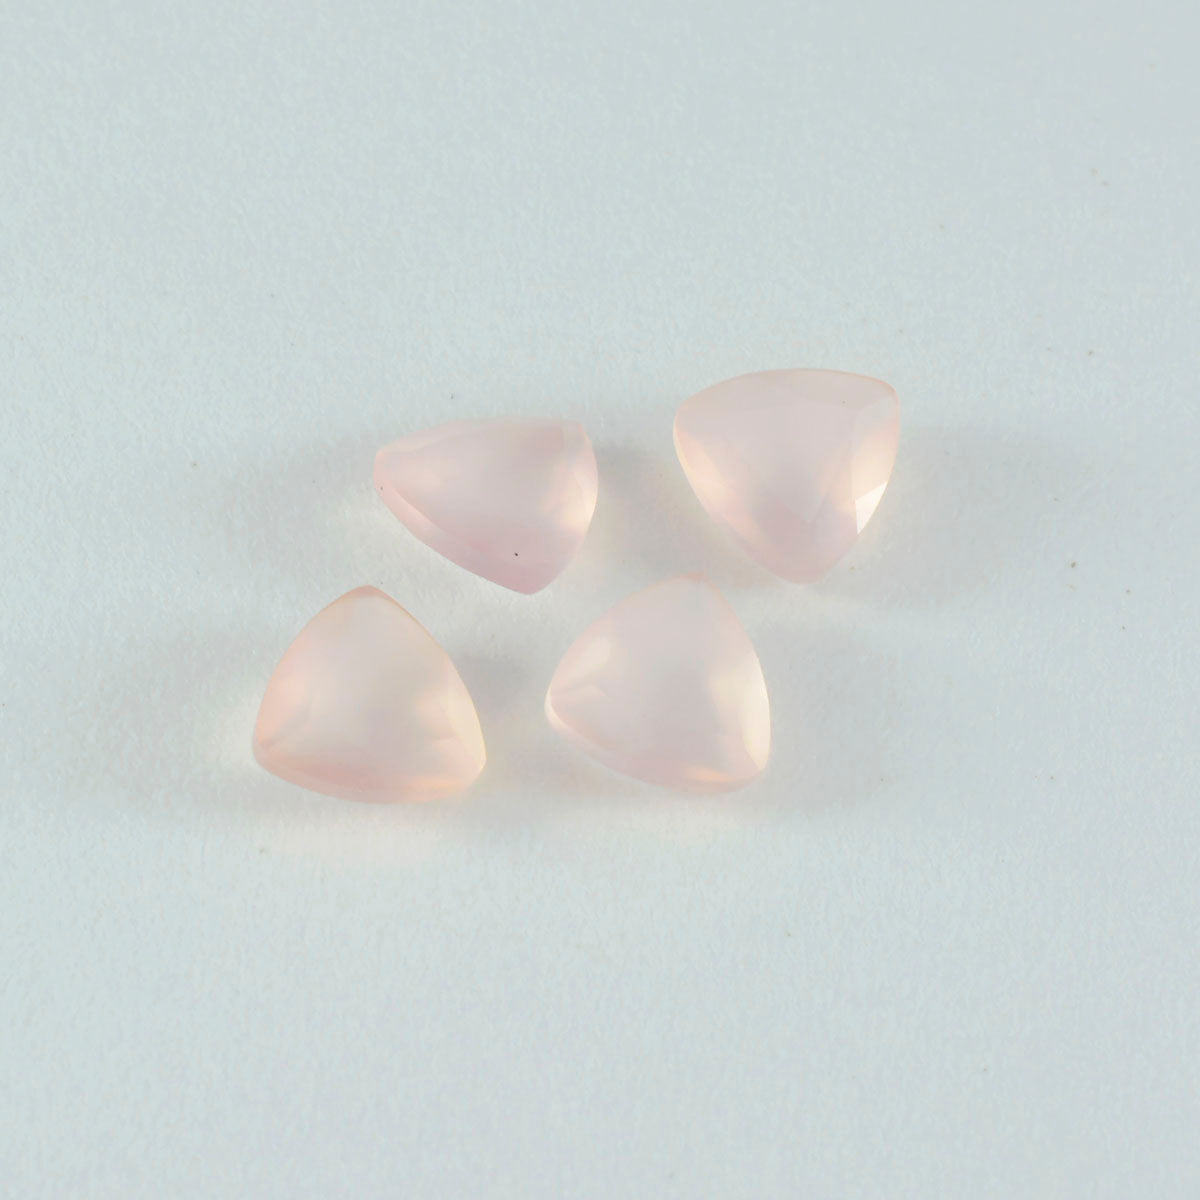 riyogems 1 шт. розовый кварц ограненный 8x8 мм форма триллиона качество AAA свободный камень